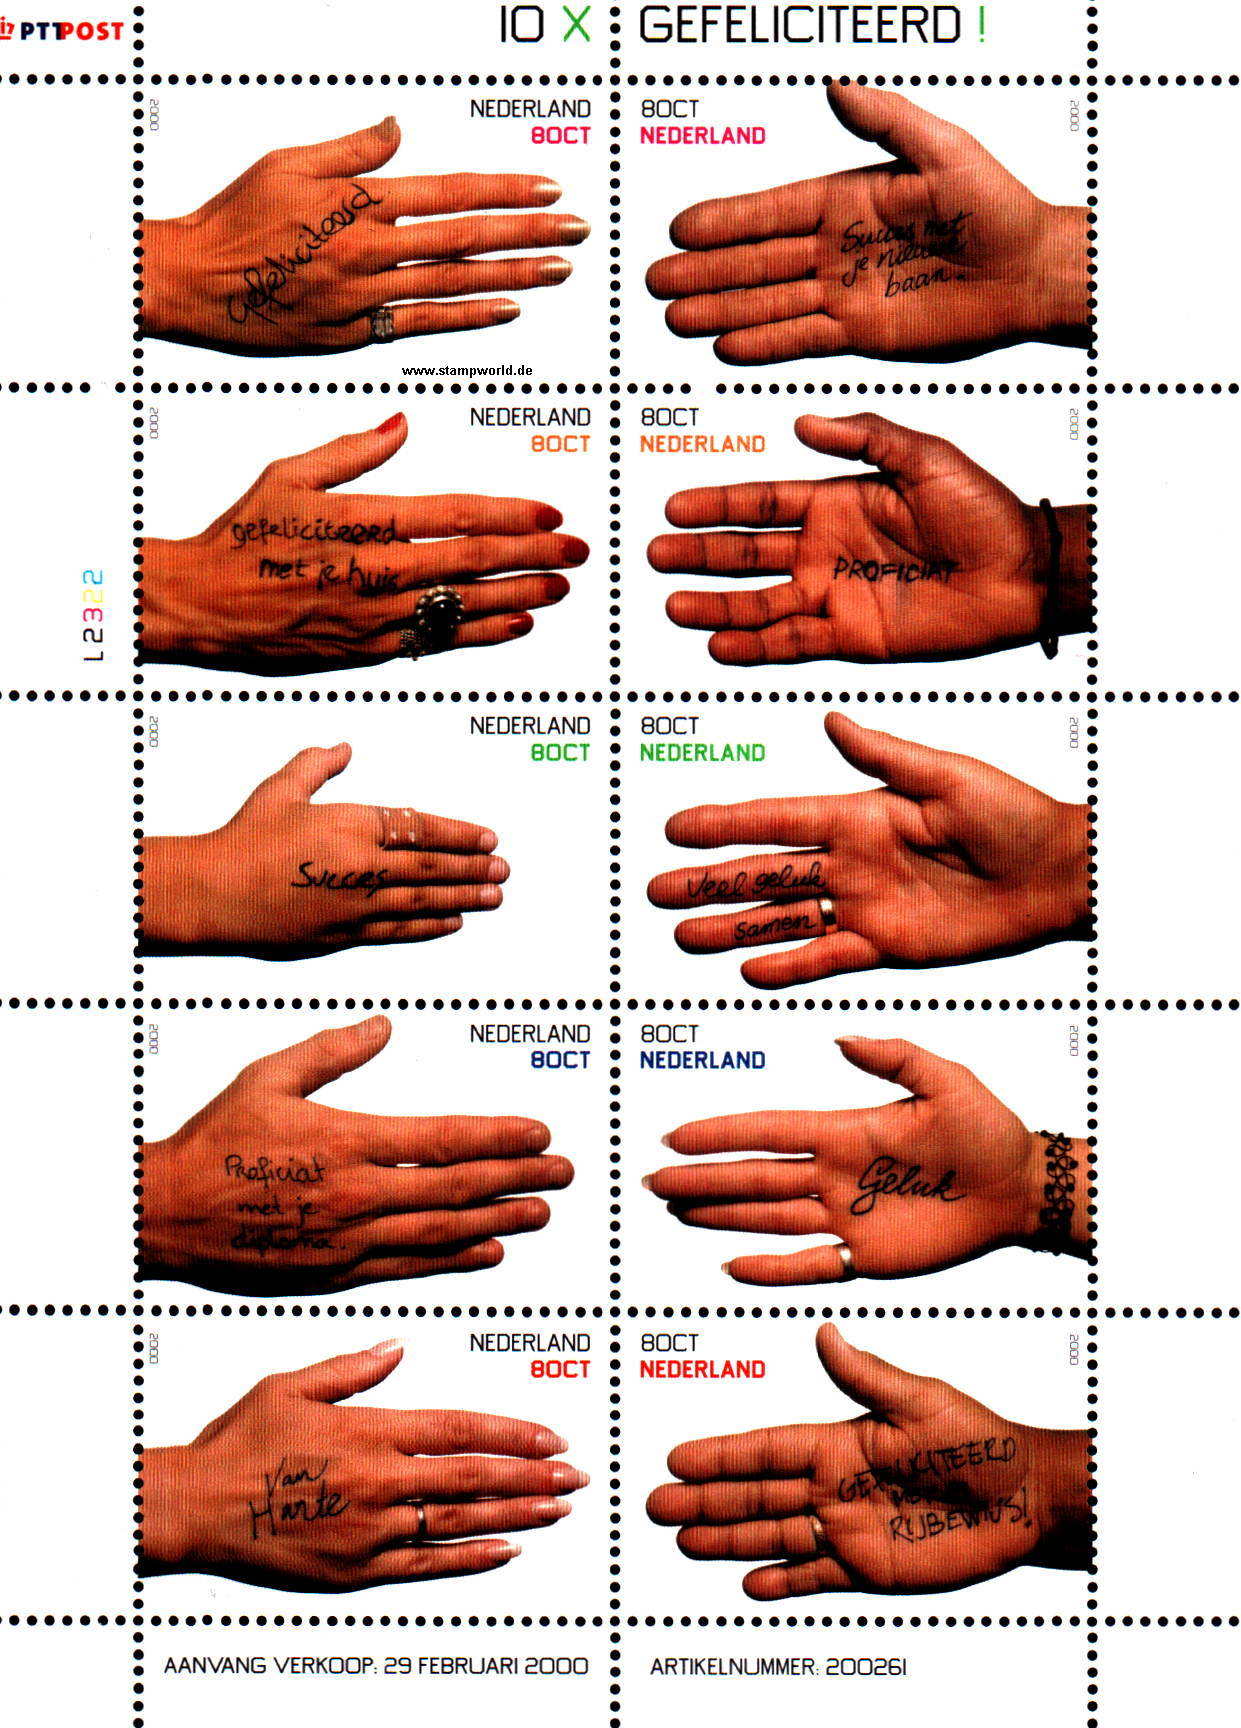 Briefmarken/Stamps Grußmarken/Hände